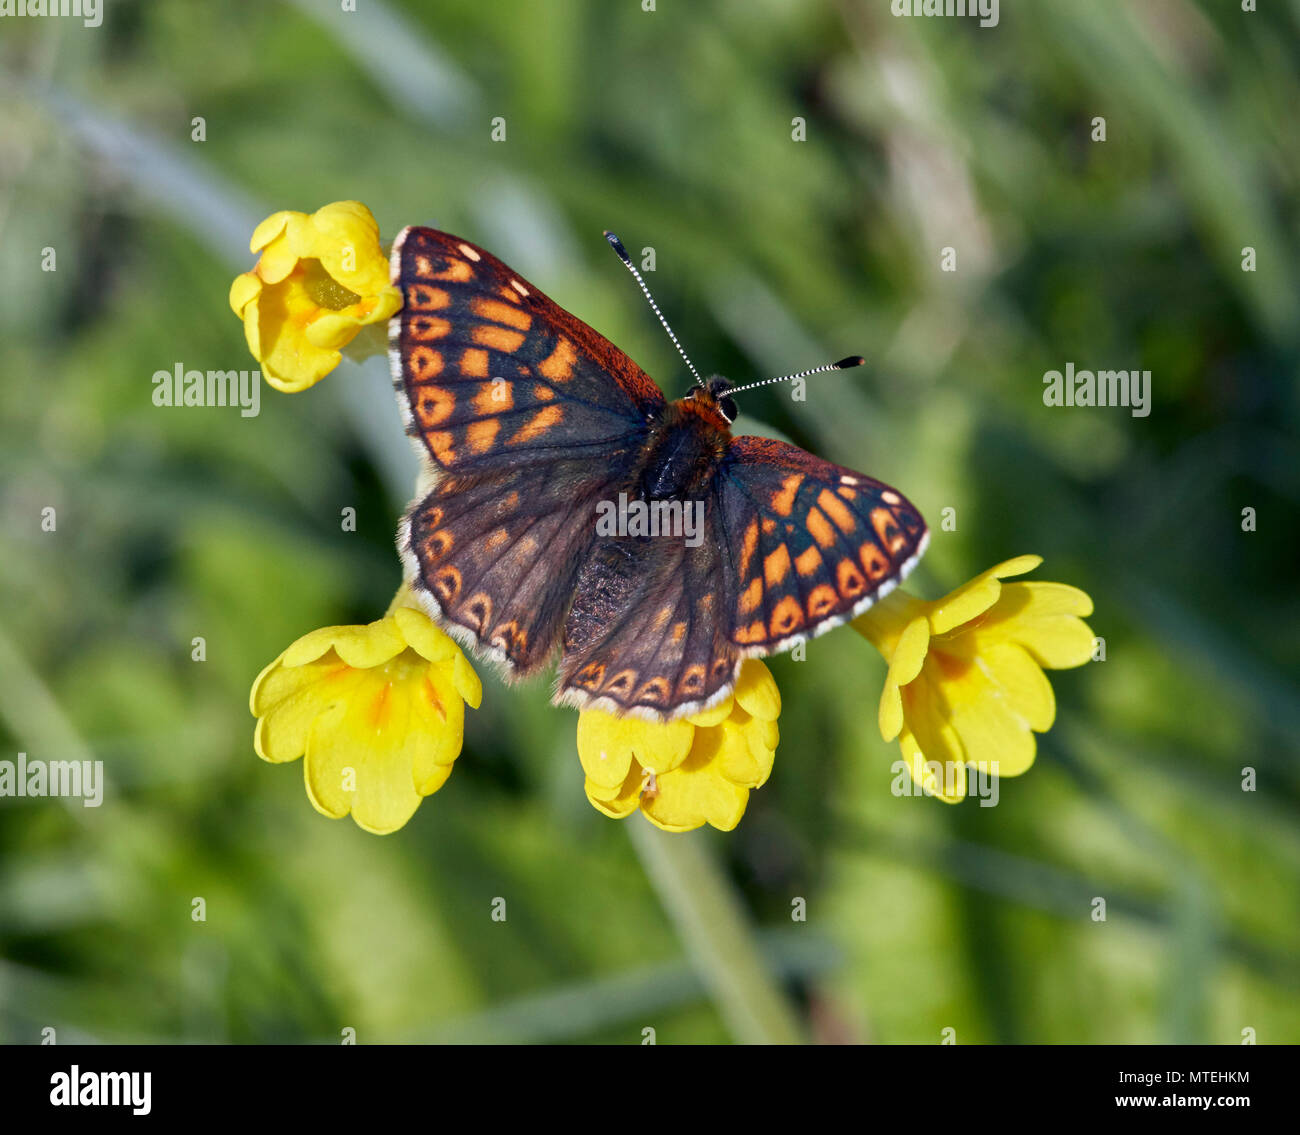 Herzog von Burgund Schmetterling auf schlüsselblumenblüten. Noar Hill Nature Reserve, Selborne, Hampshire, England. Stockfoto